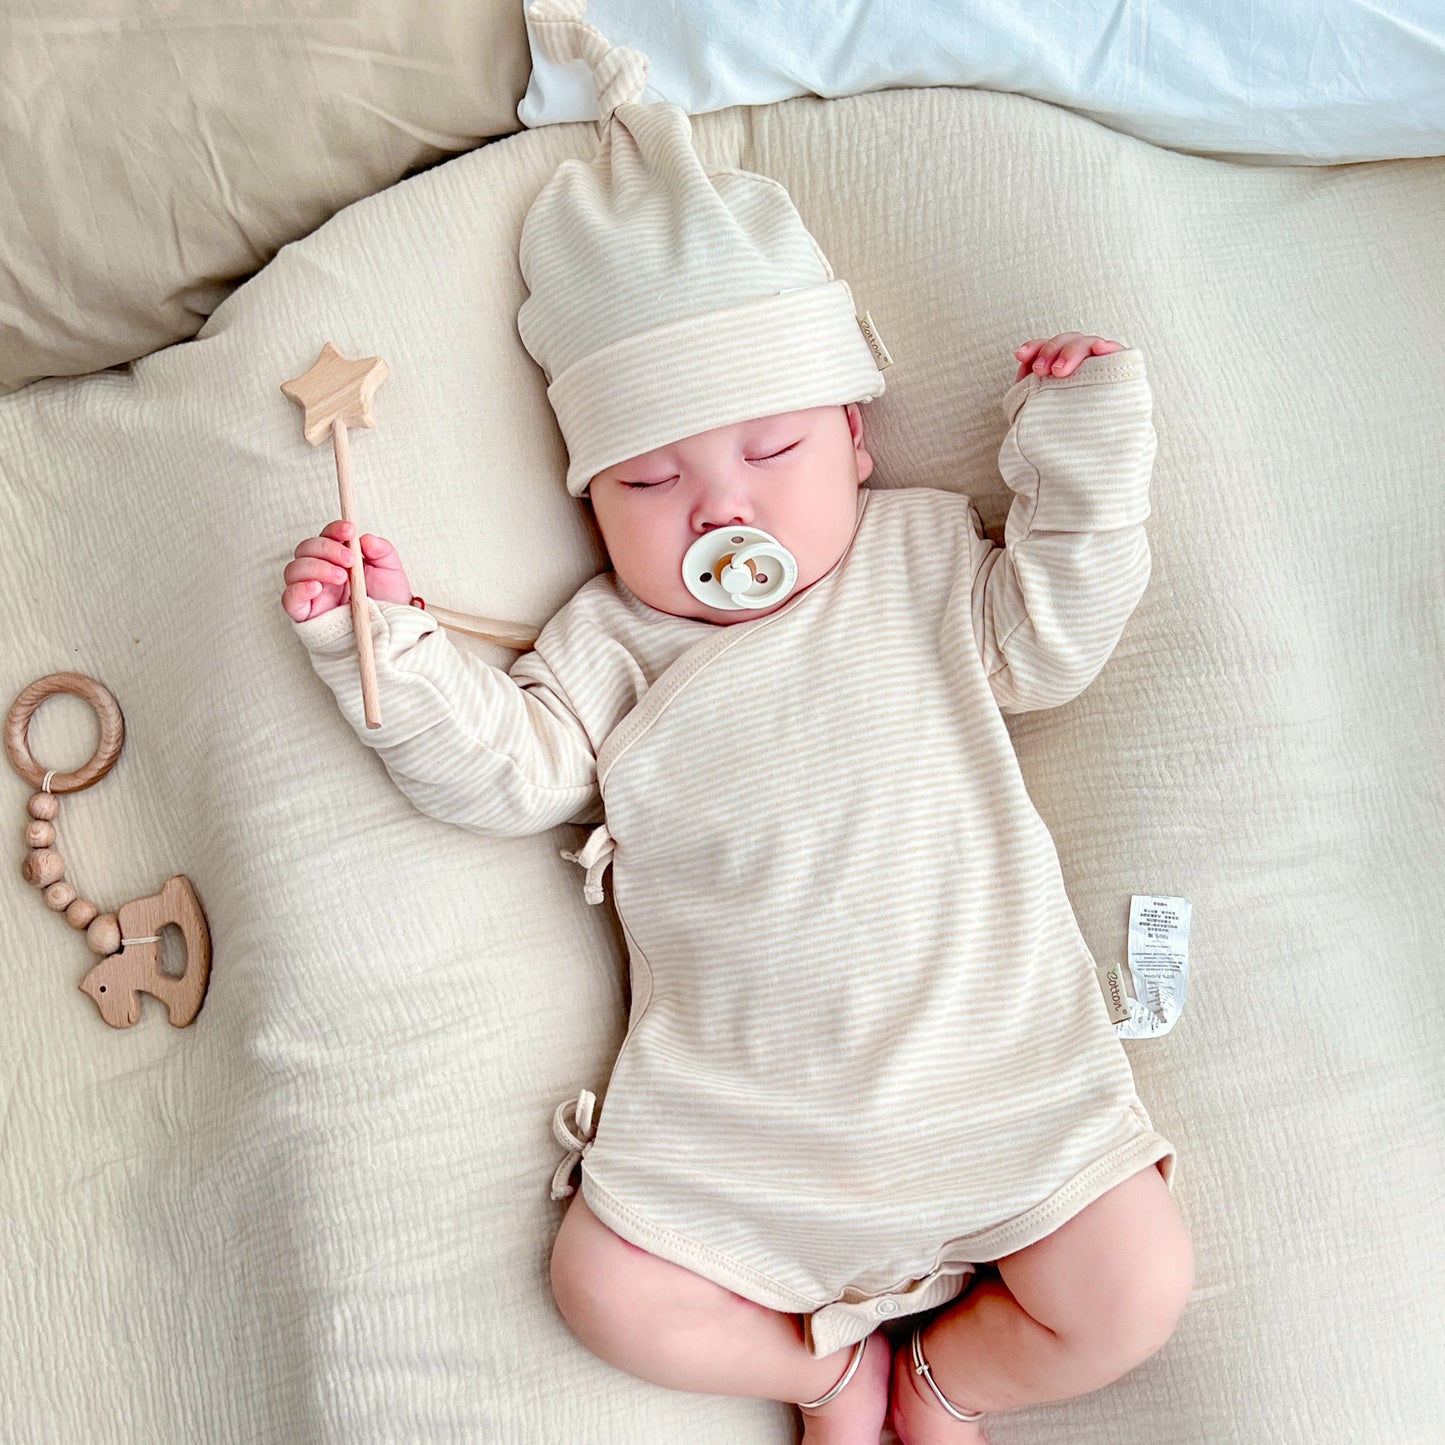 Baby Gifts: Organic Newborn Layette Sets